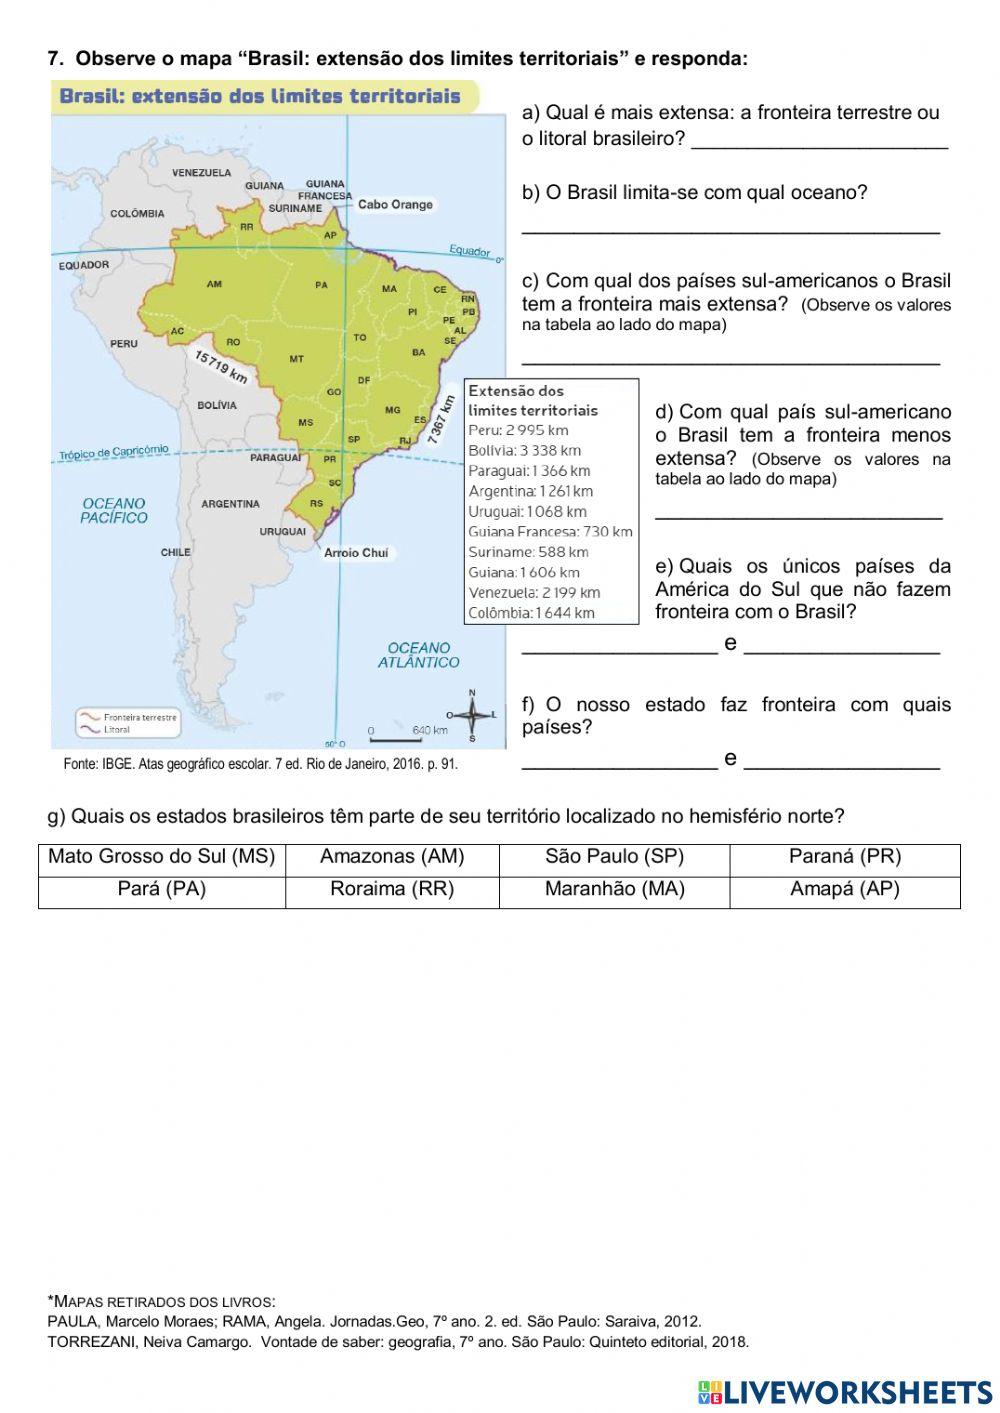 Localização, dimensão e fronteiras do território brasileiro